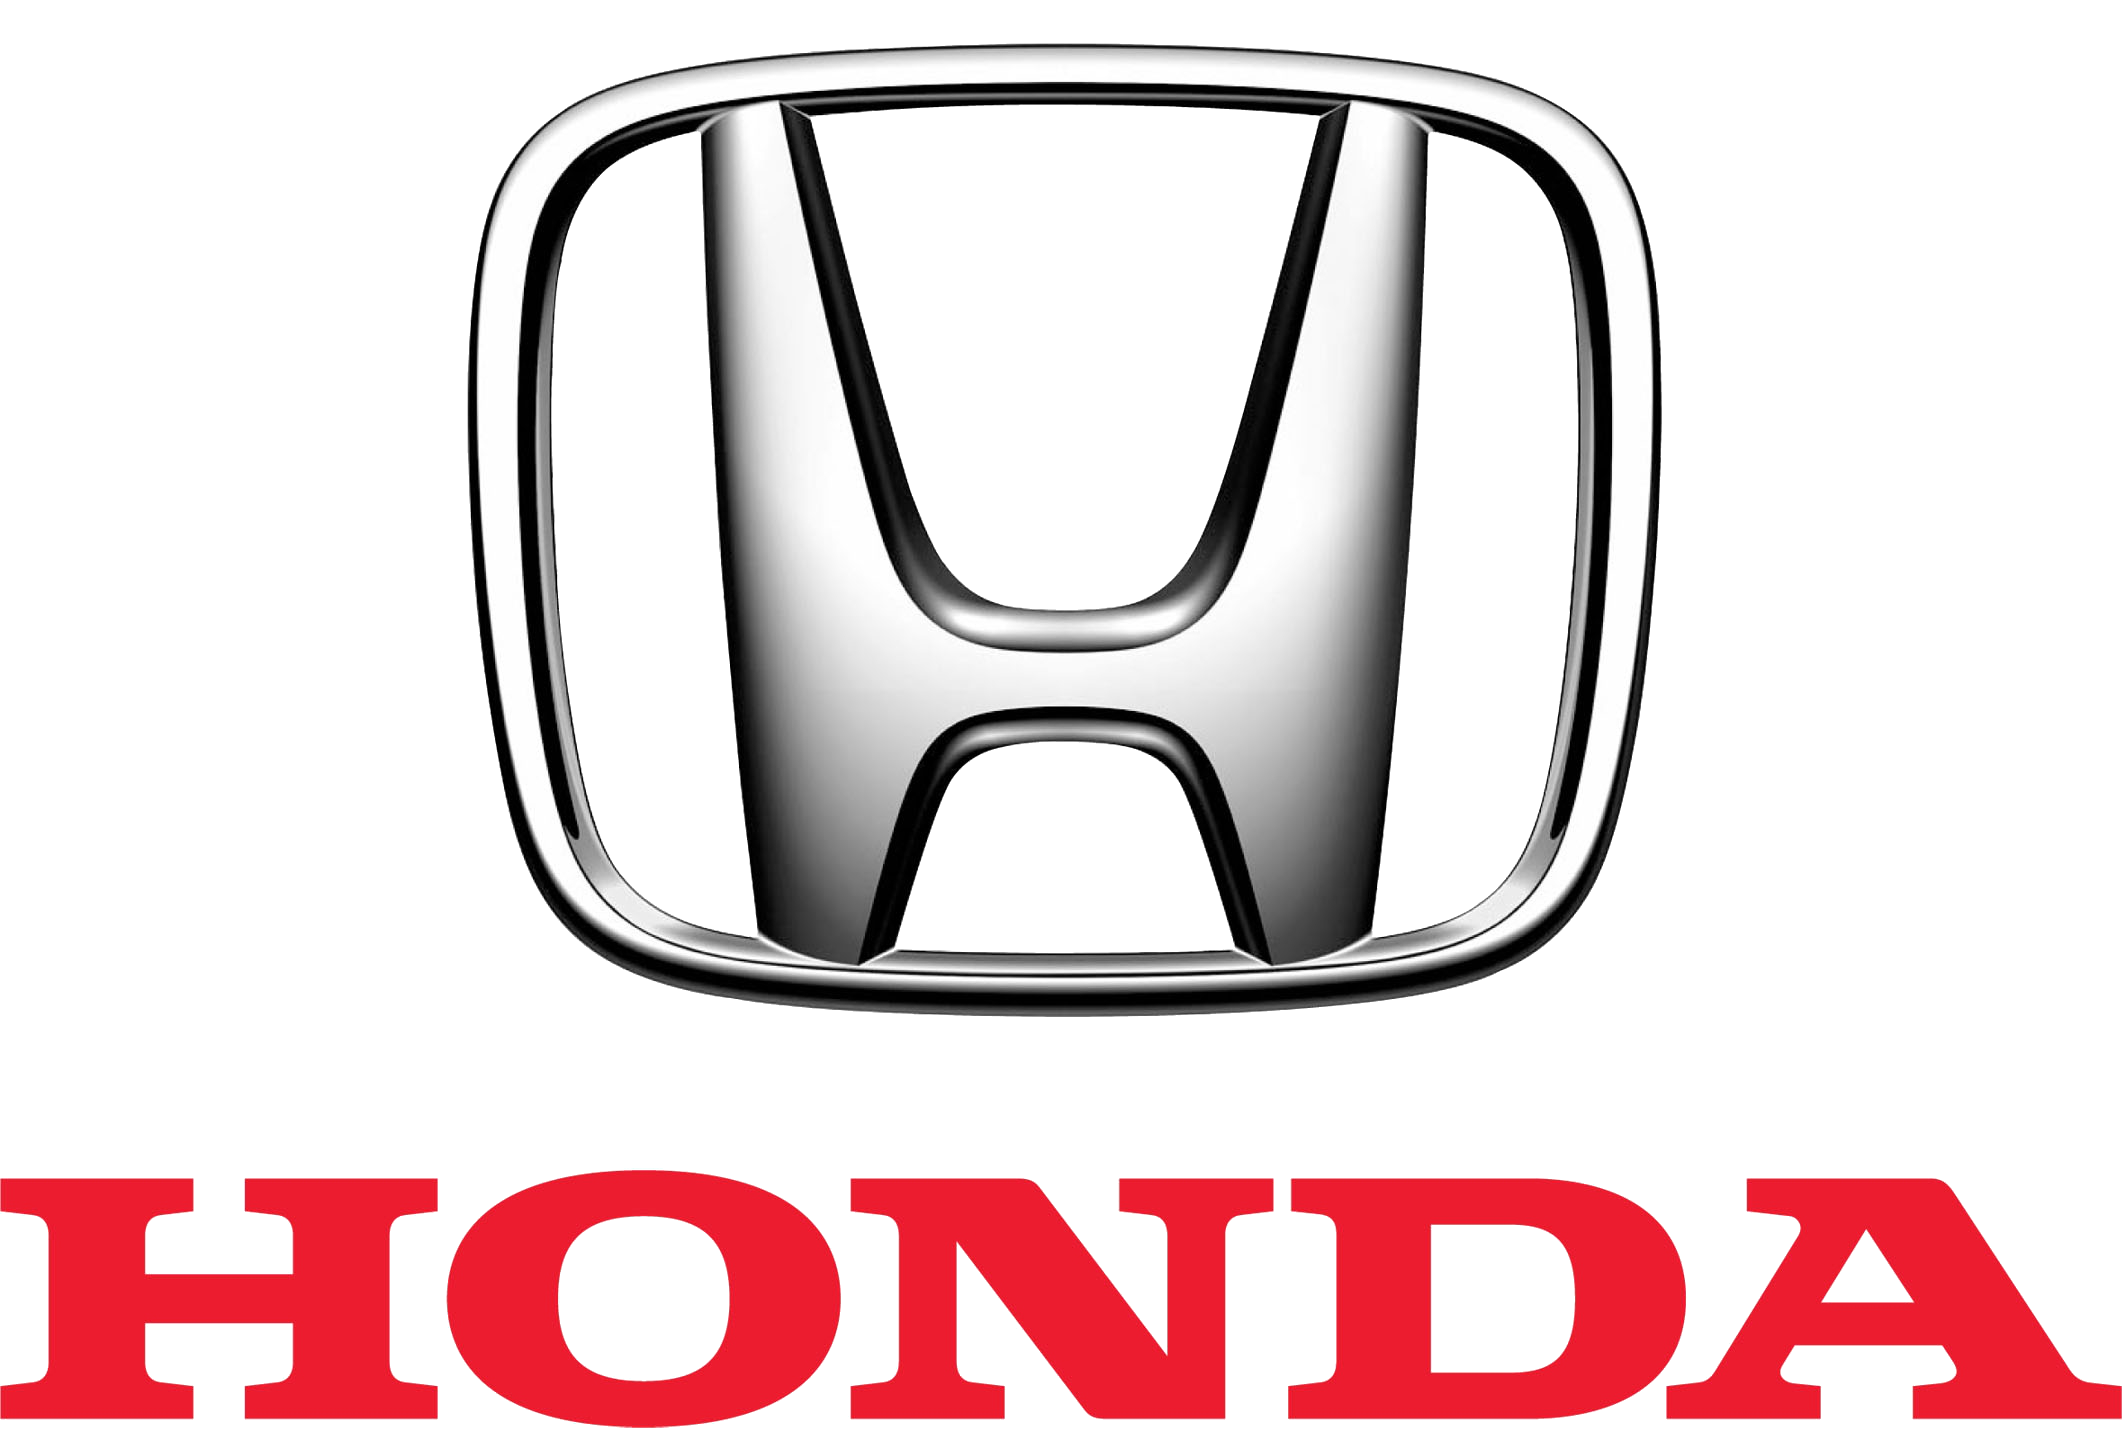 Honda Logo, Honda Car Symbol Meaning and History | Car Brand Names.com